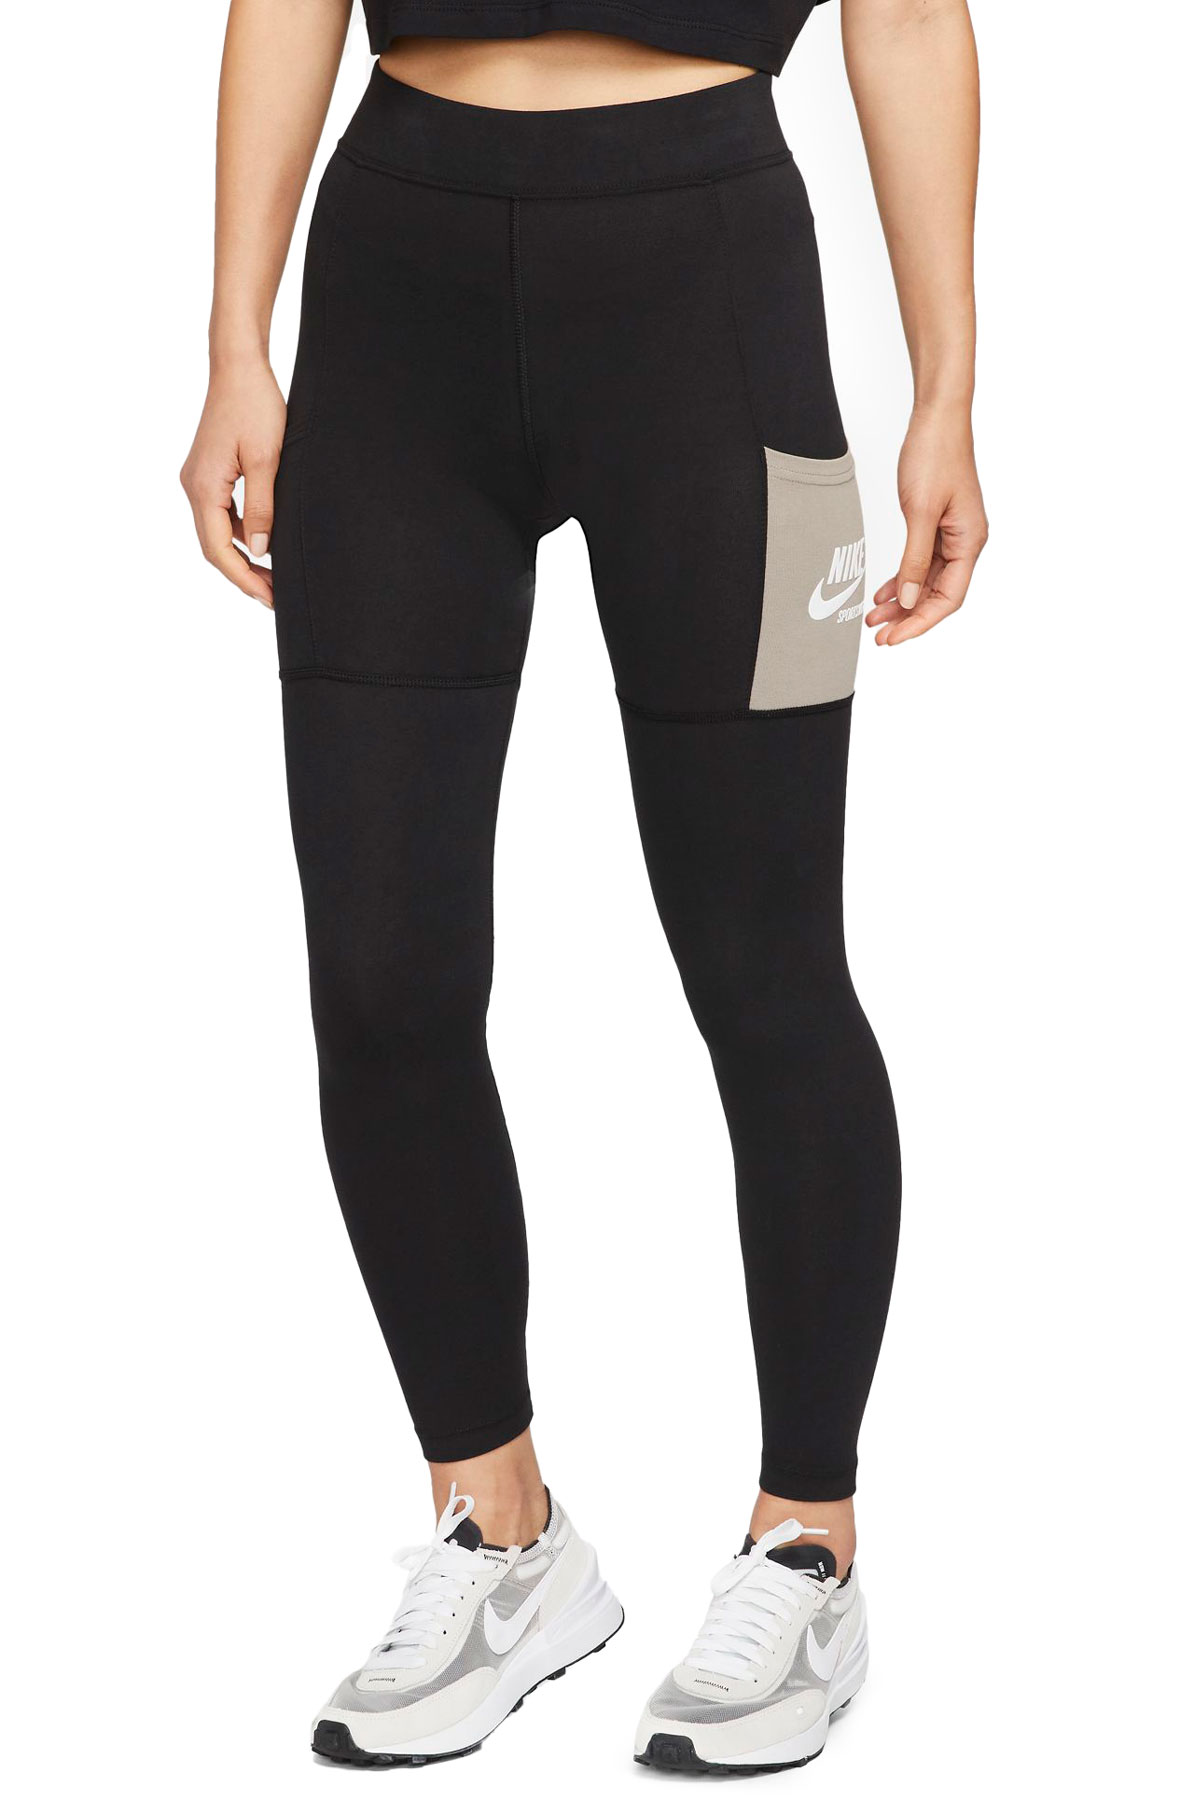 Nike Sportswear Women's Leggings Black/White/Grey 846523-010